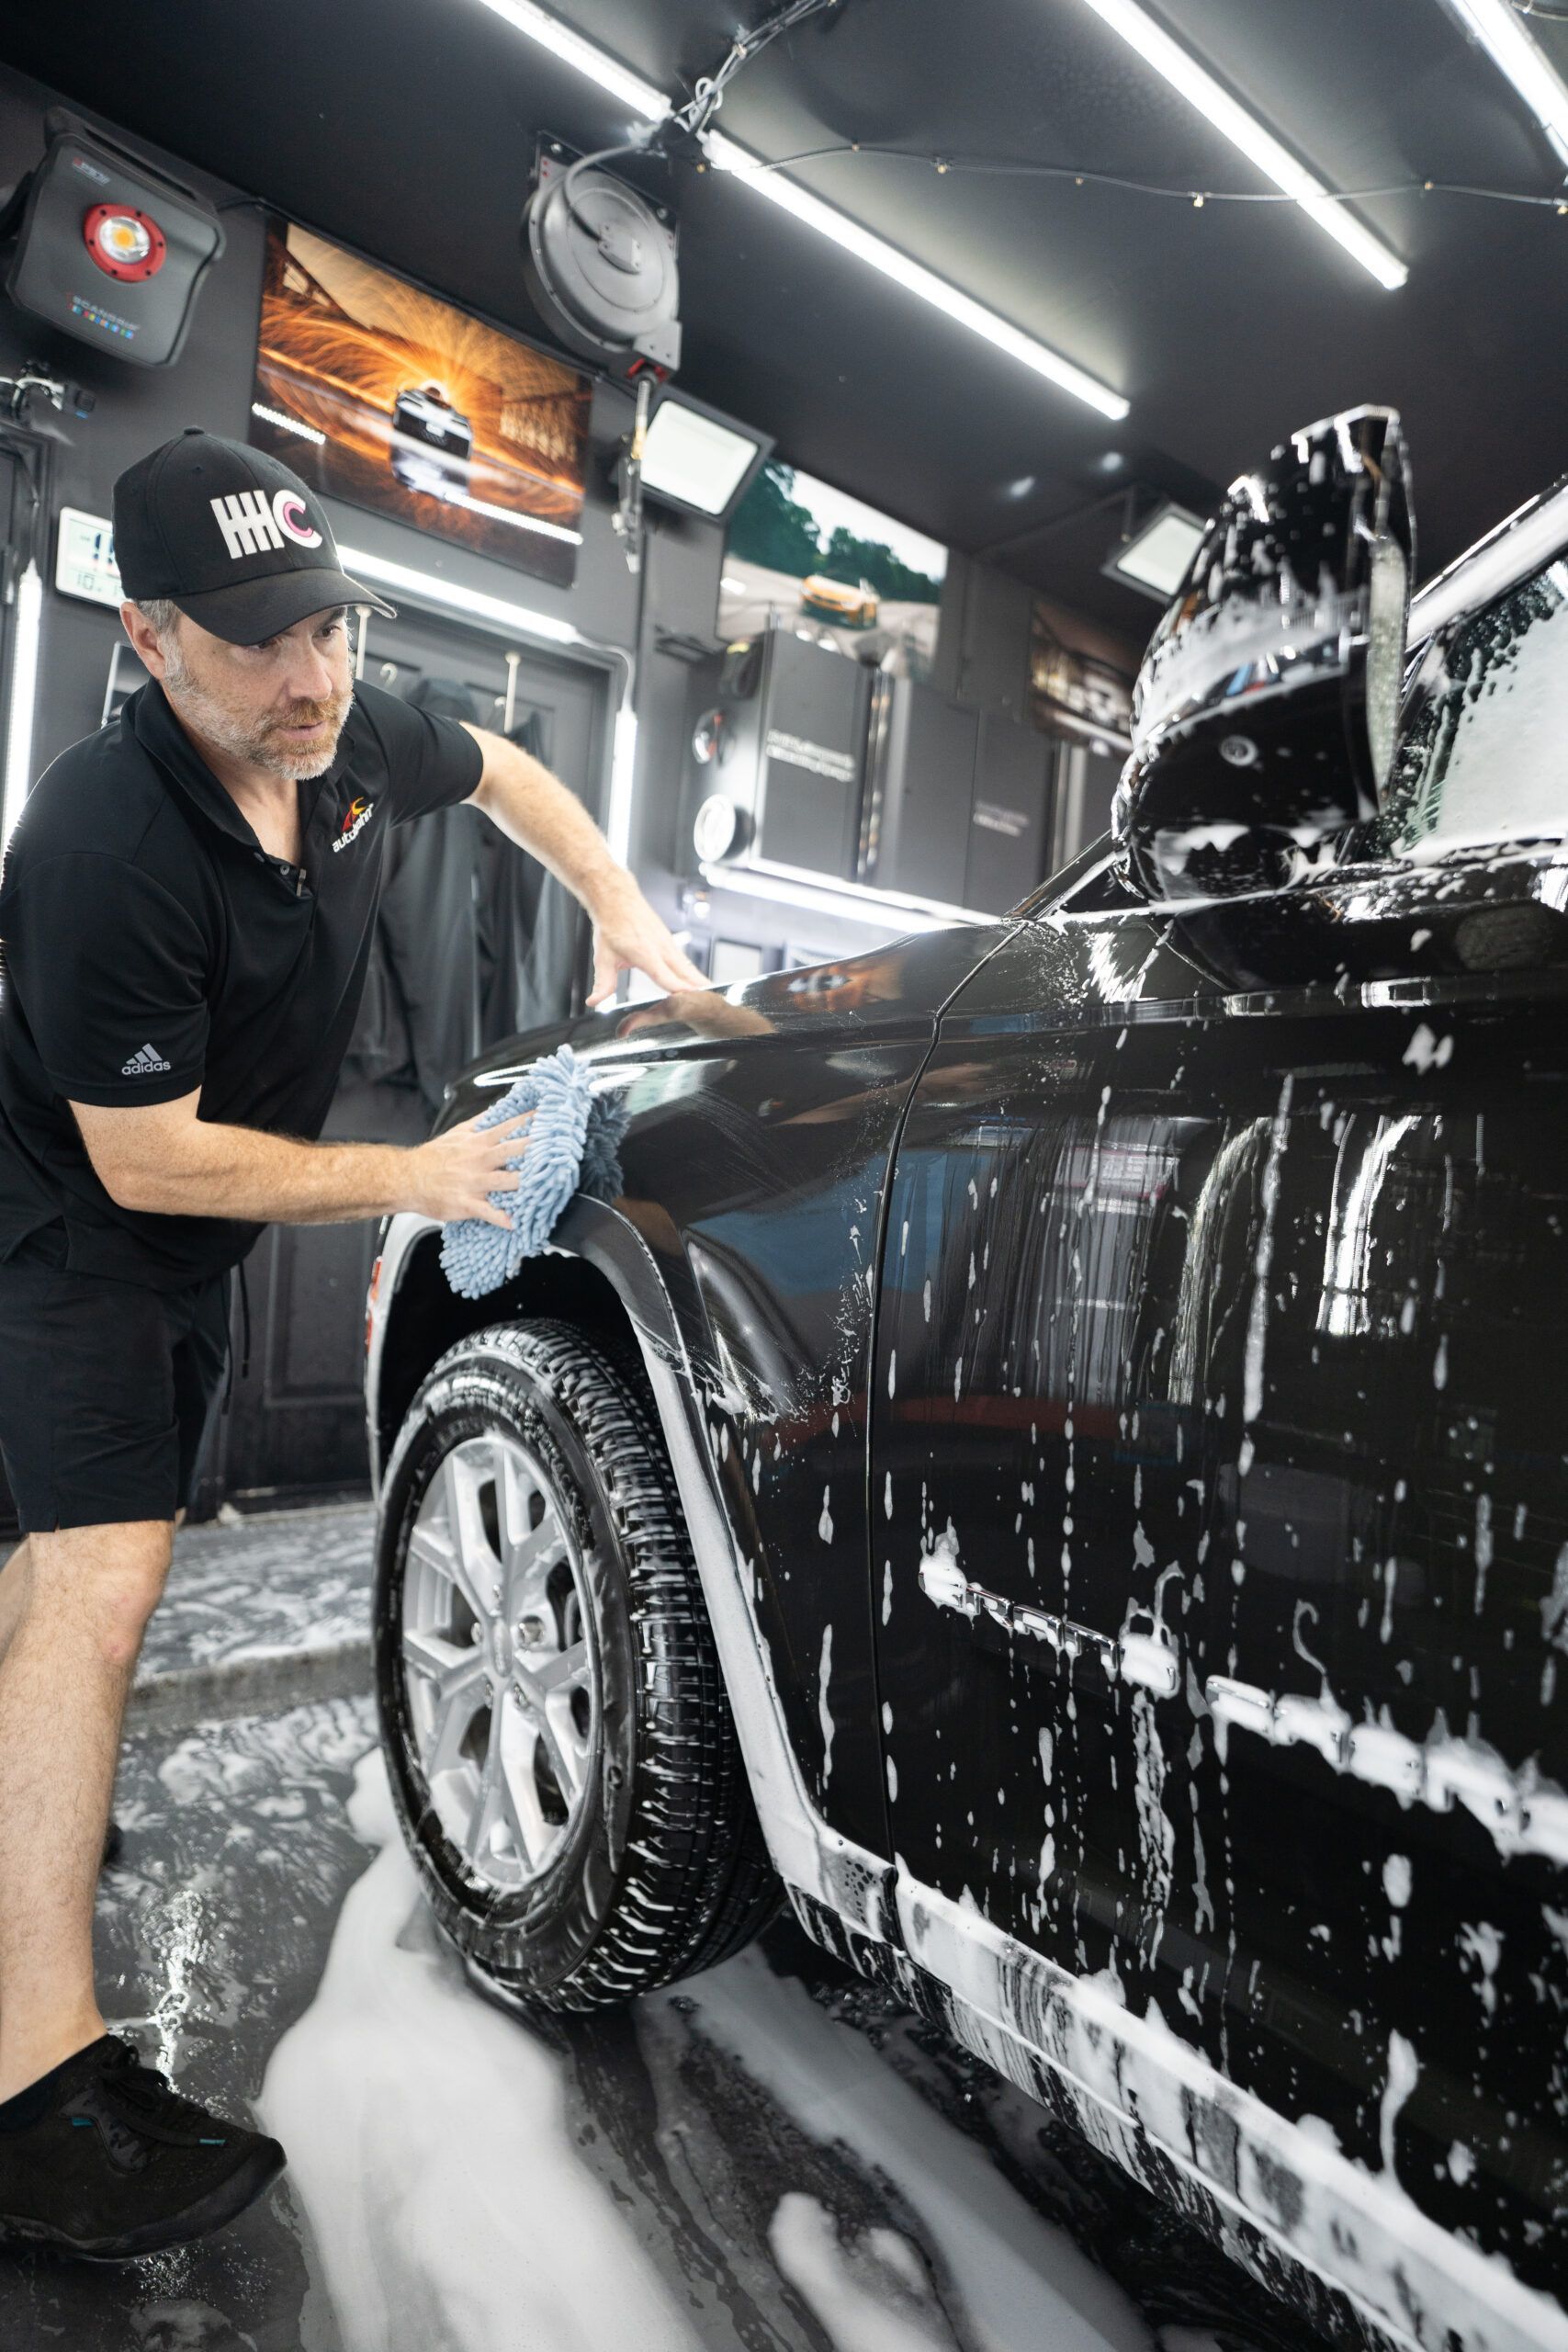 A man is washing a black car in a garage.